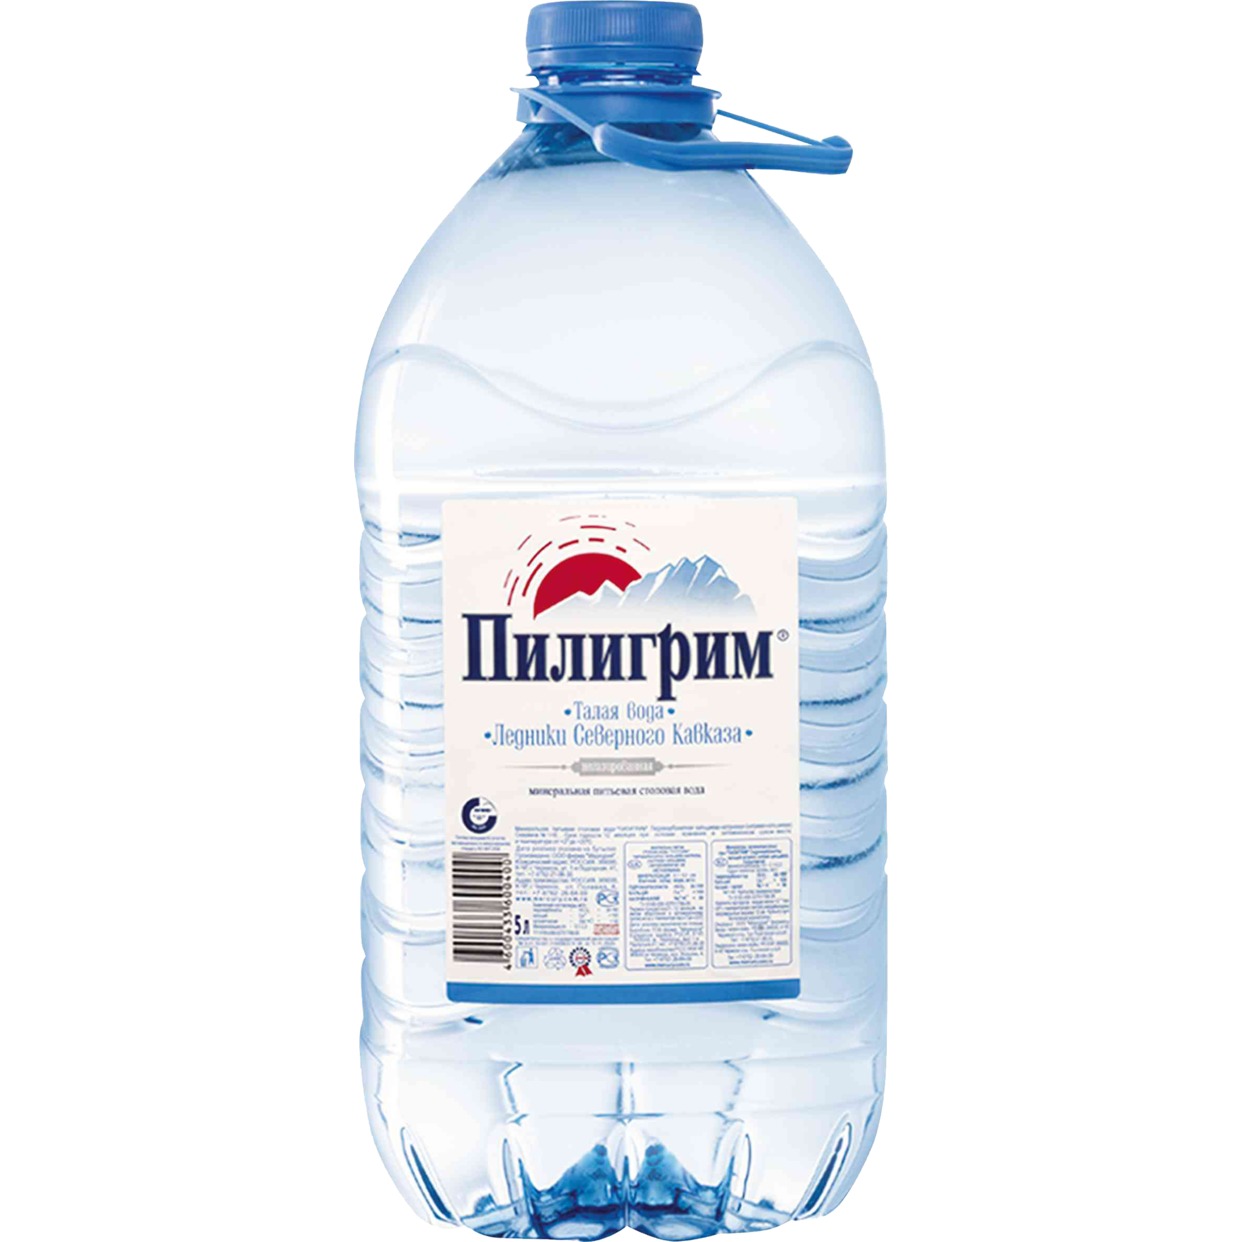 Вода Пилигрим, питьевая, 5 л